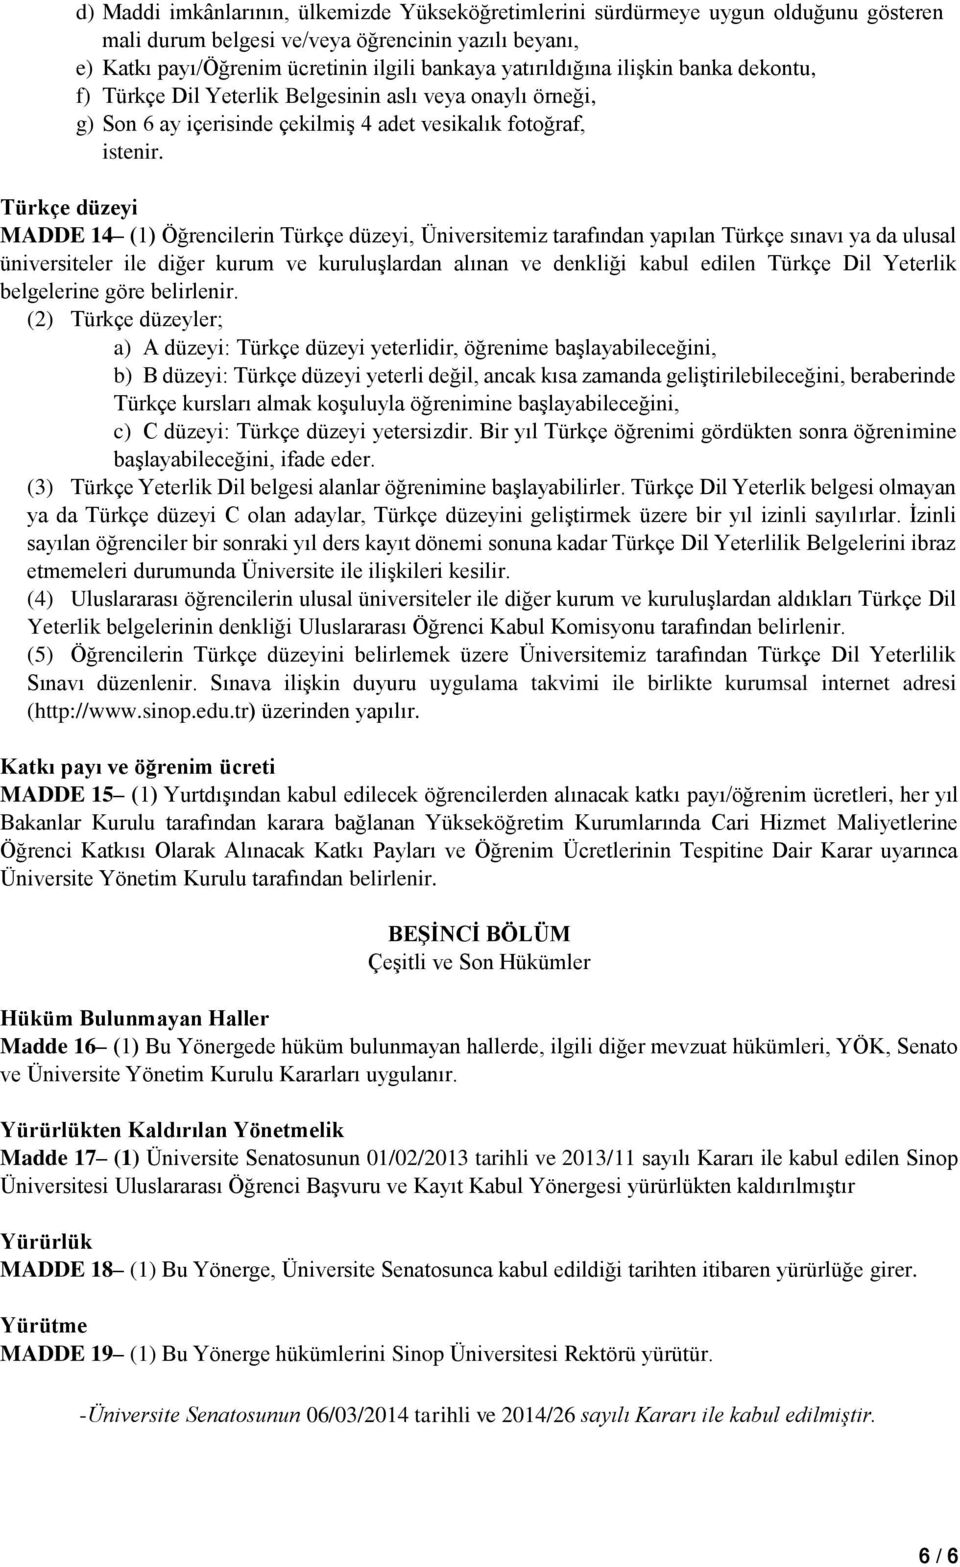 Türkçe düzeyi MADDE 14 (1) Öğrencilerin Türkçe düzeyi, Üniversitemiz tarafından yapılan Türkçe sınavı ya da ulusal üniversiteler ile diğer kurum ve kuruluşlardan alınan ve denkliği kabul edilen